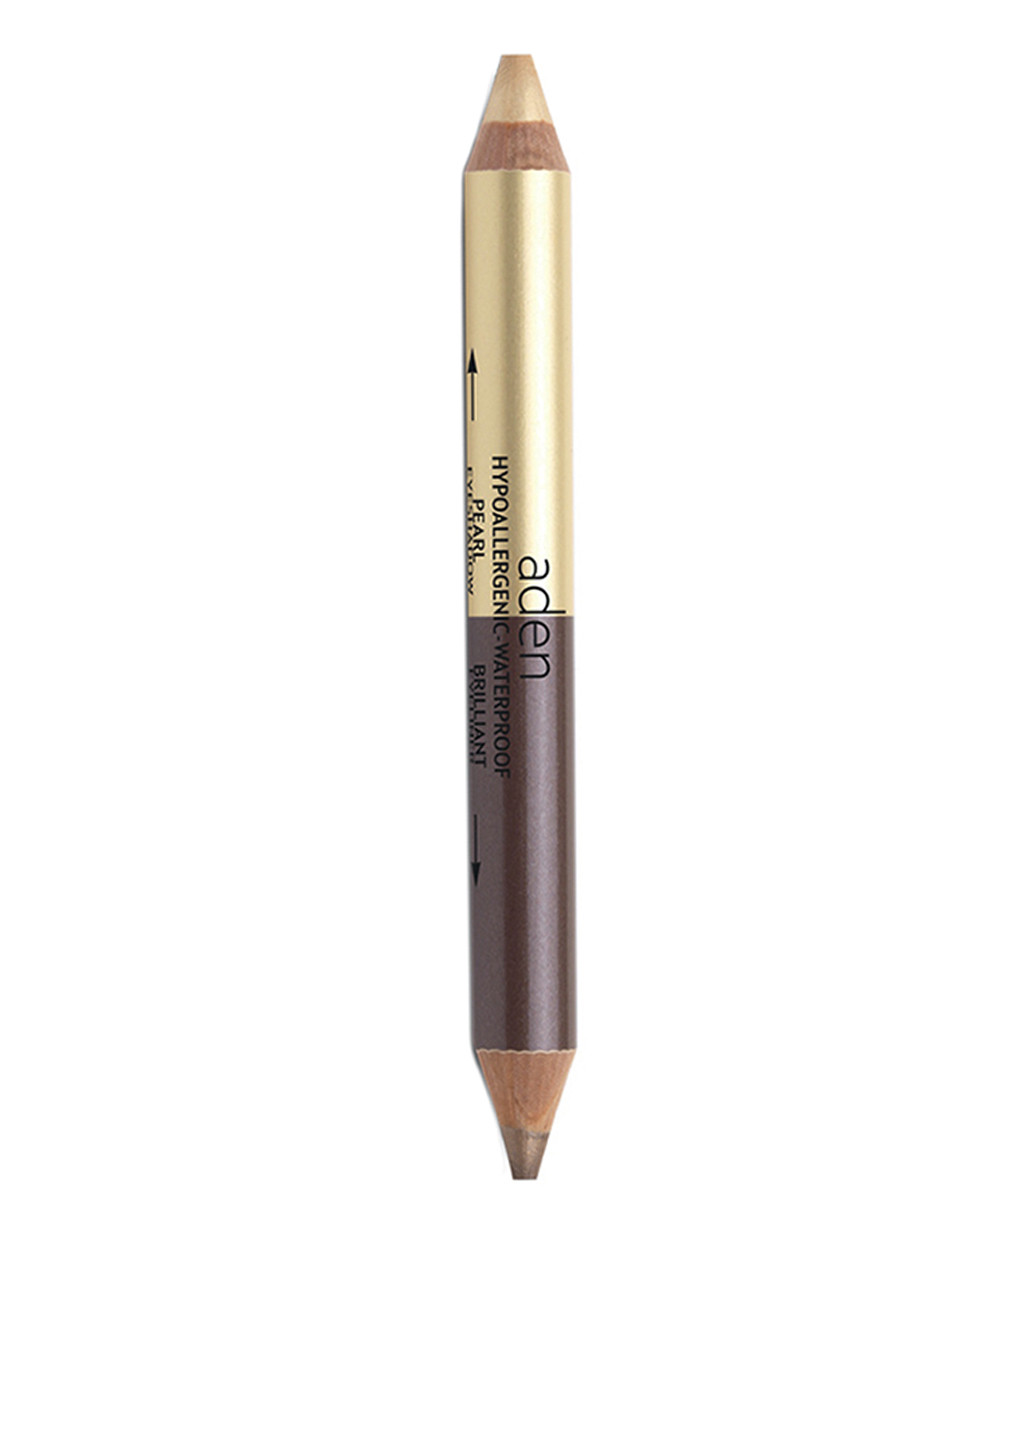 Тени-карандаш для век Jumbo Twin (рearl gold-brown), 4,11 г Aden (74326005)